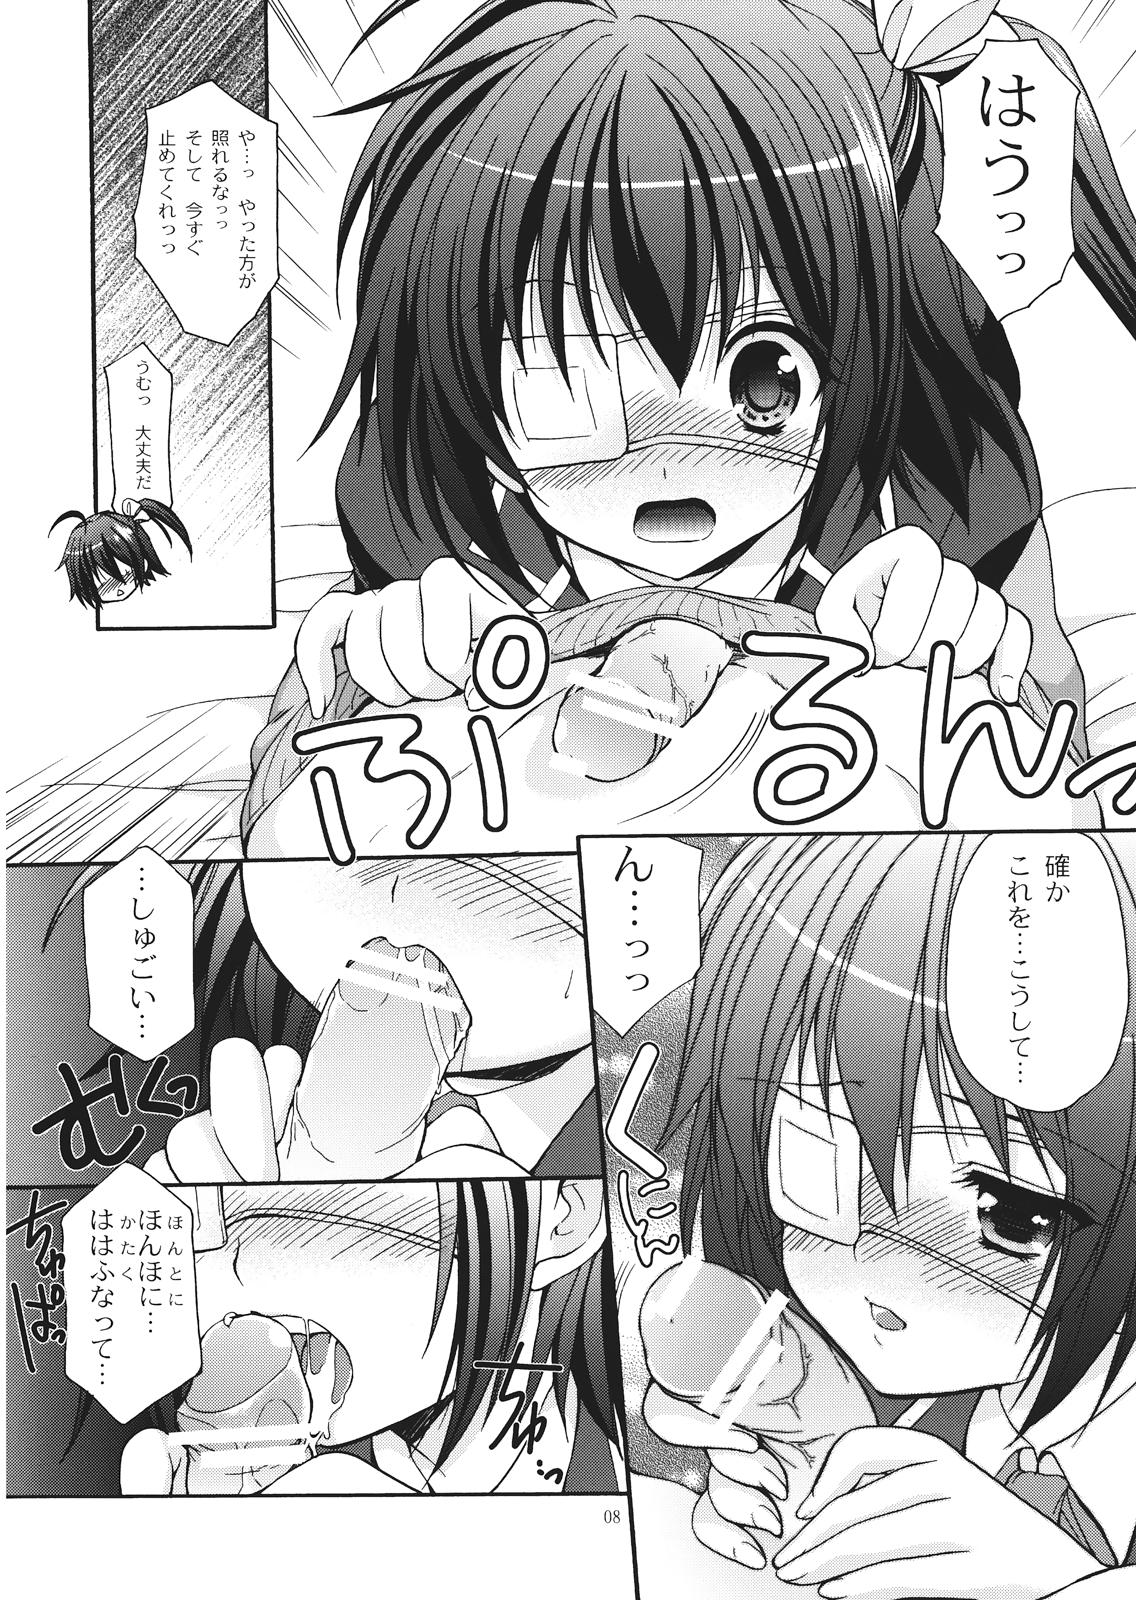 Nuru Massage fallen angel - Chuunibyou demo koi ga shitai Gay Largedick - Page 8